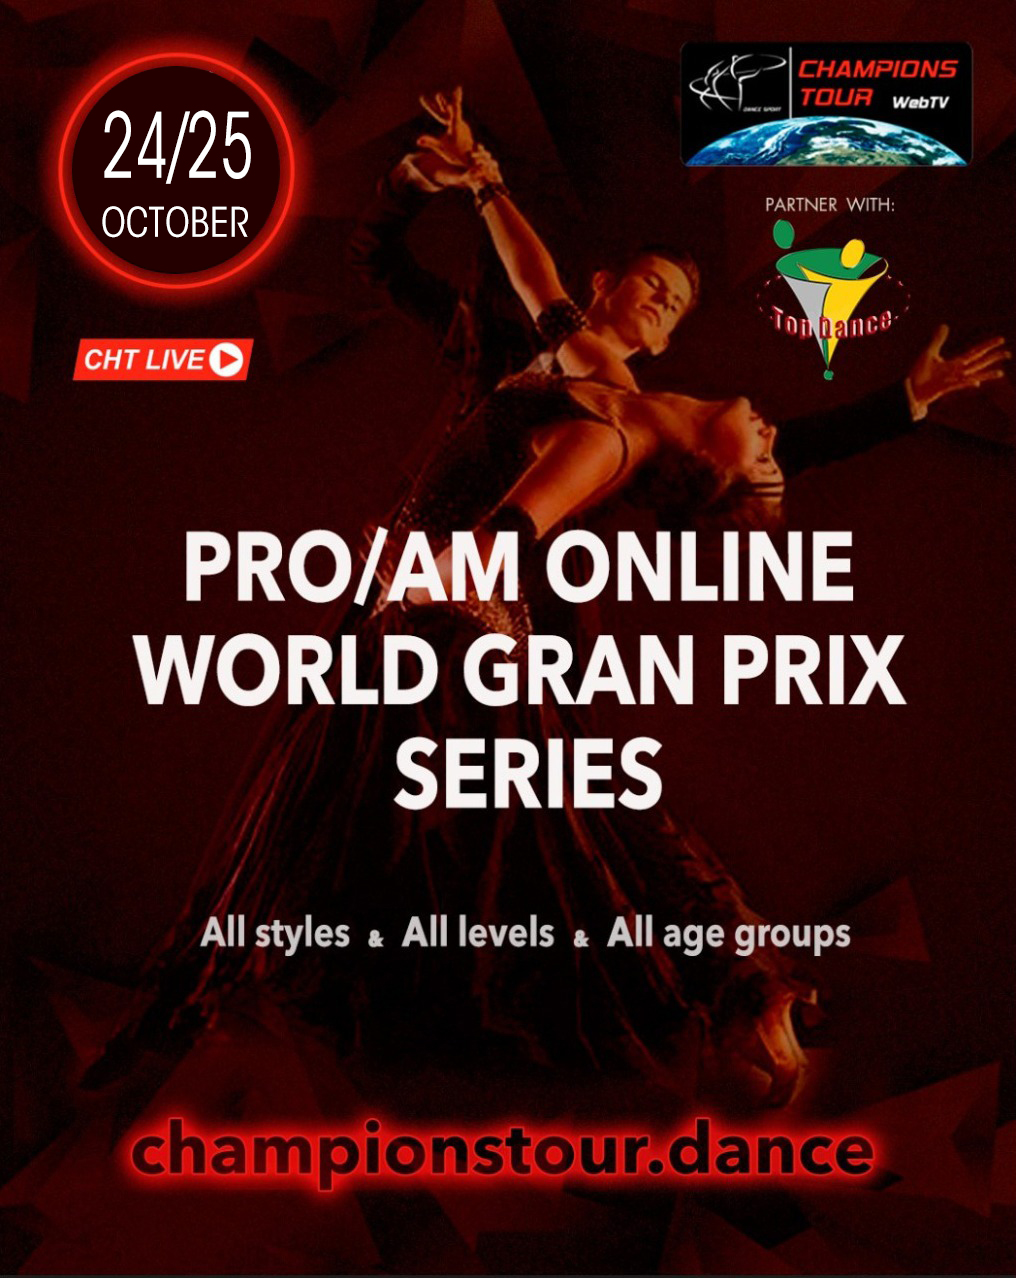 Pro/Am Online World Grand Prix Tour 2020